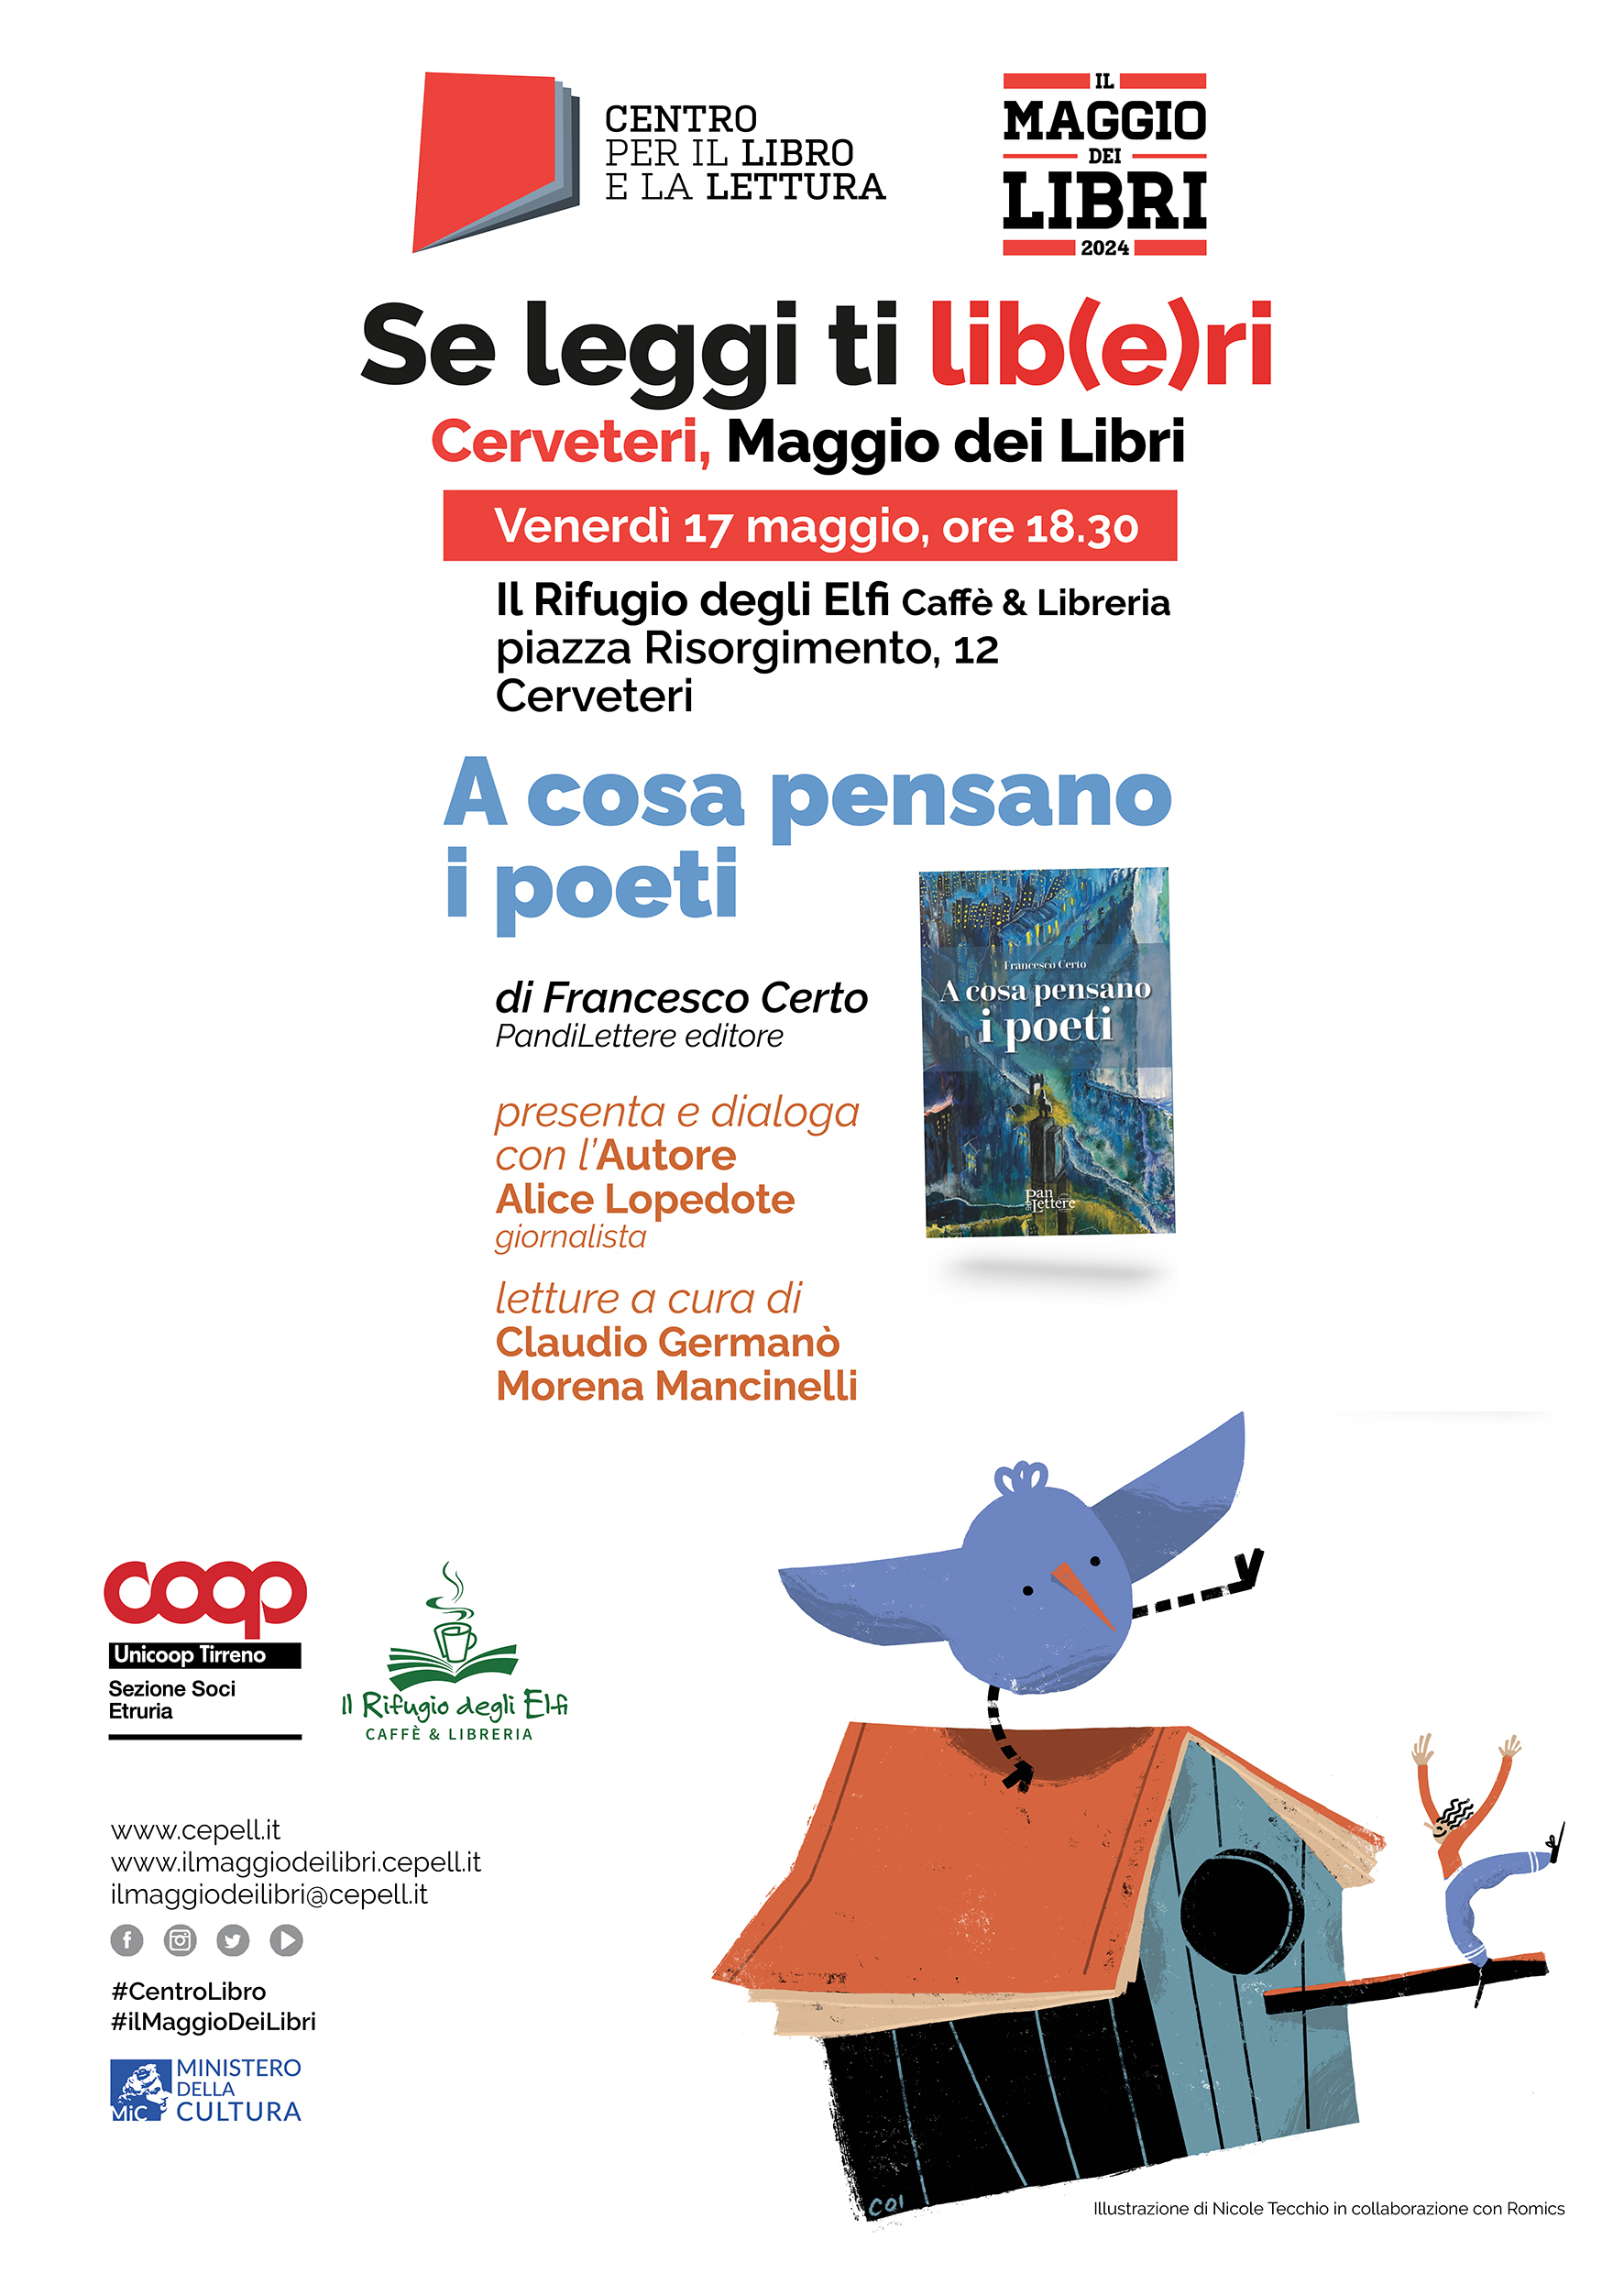 Presentazione del libro "A cosa pensano i poeti" di Francesco Certo a Cerveteri